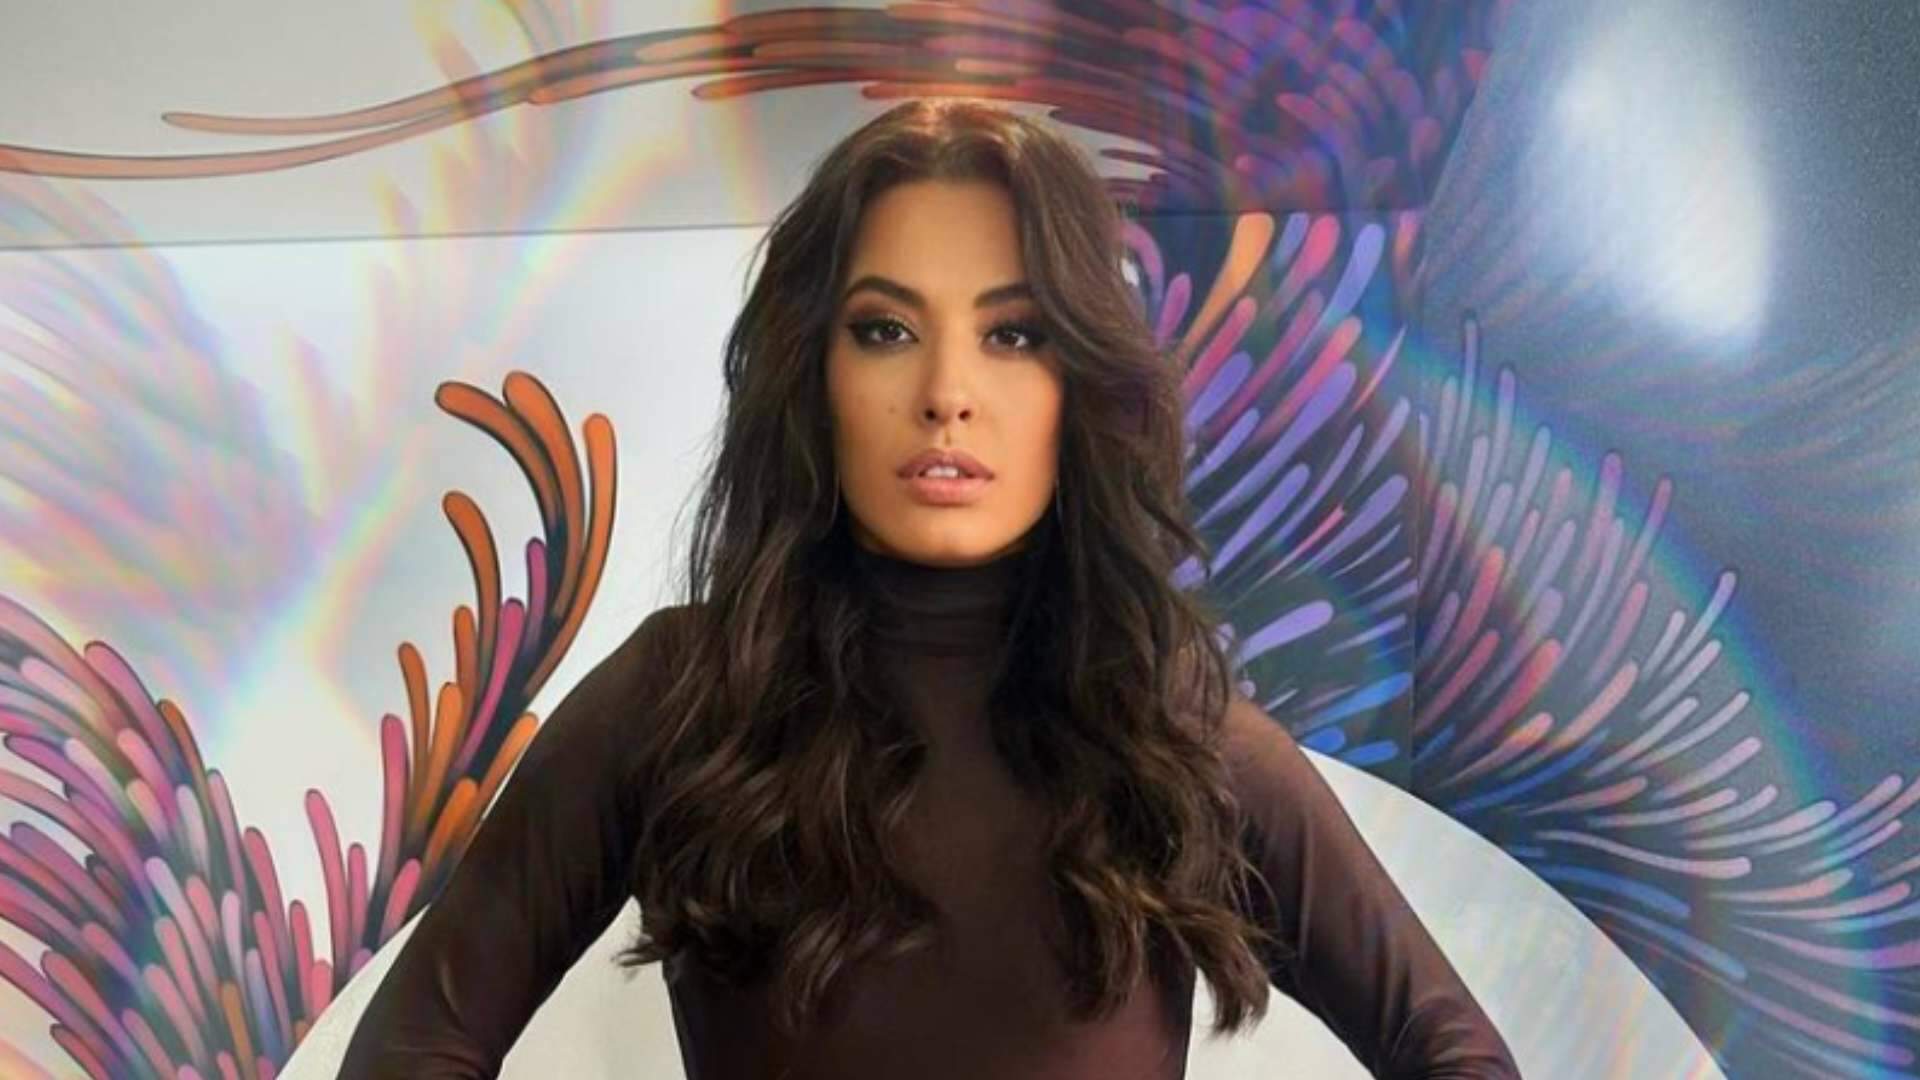 Programa de moda? Beatriz Reis revela detalhes de sua preparação para apresentar nova atração na Globo - Metropolitana FM